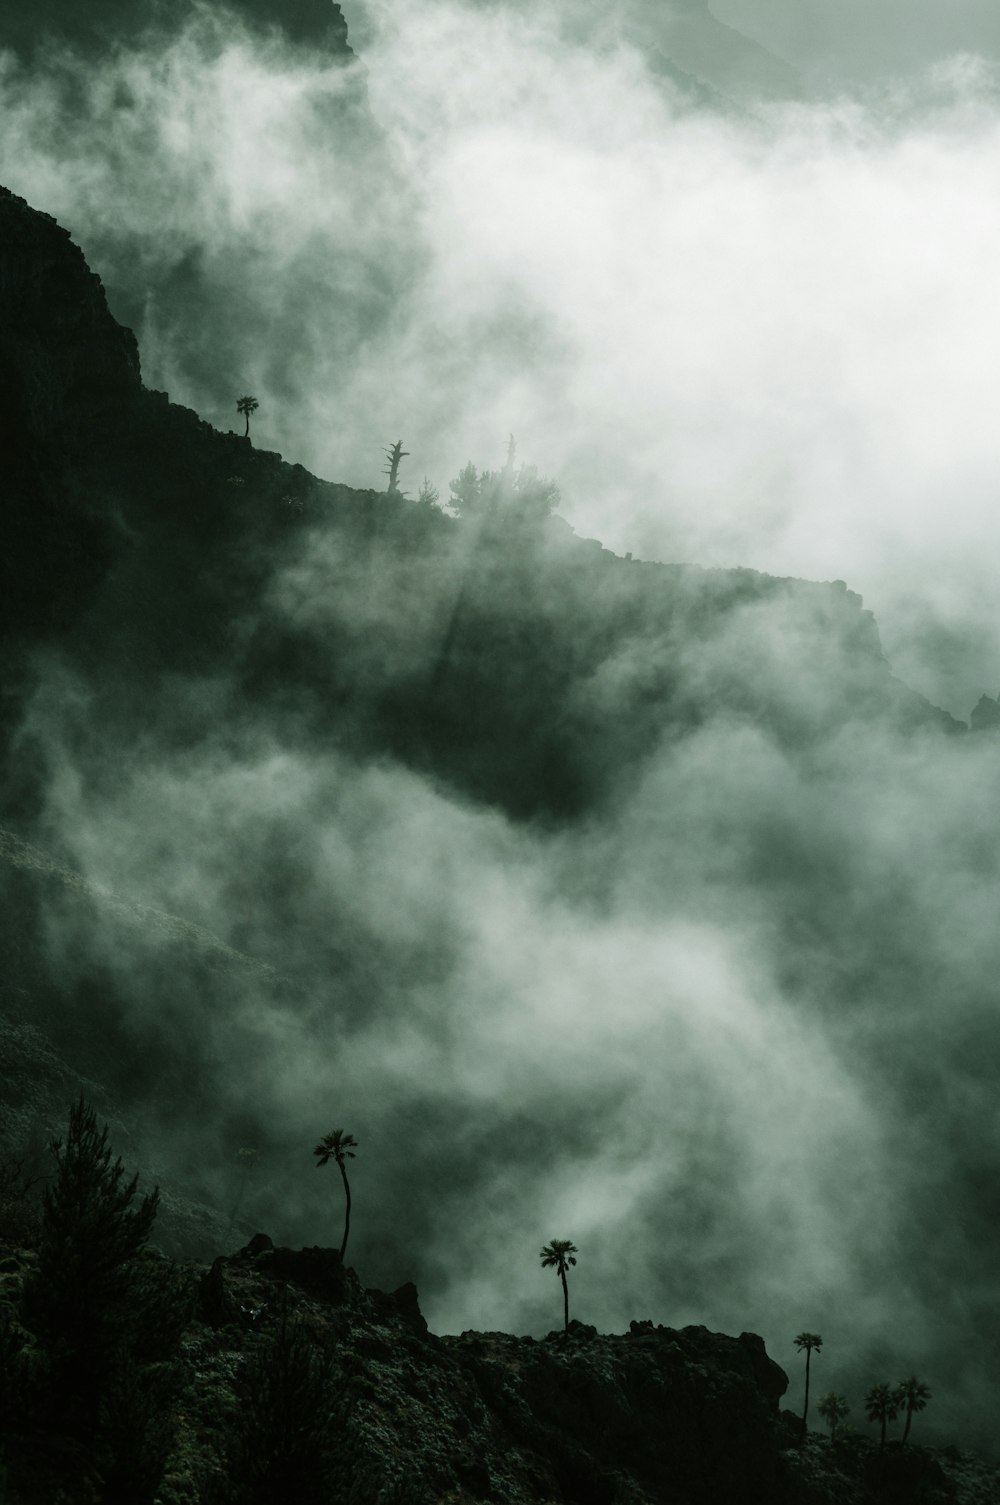 a large cloud of smoke